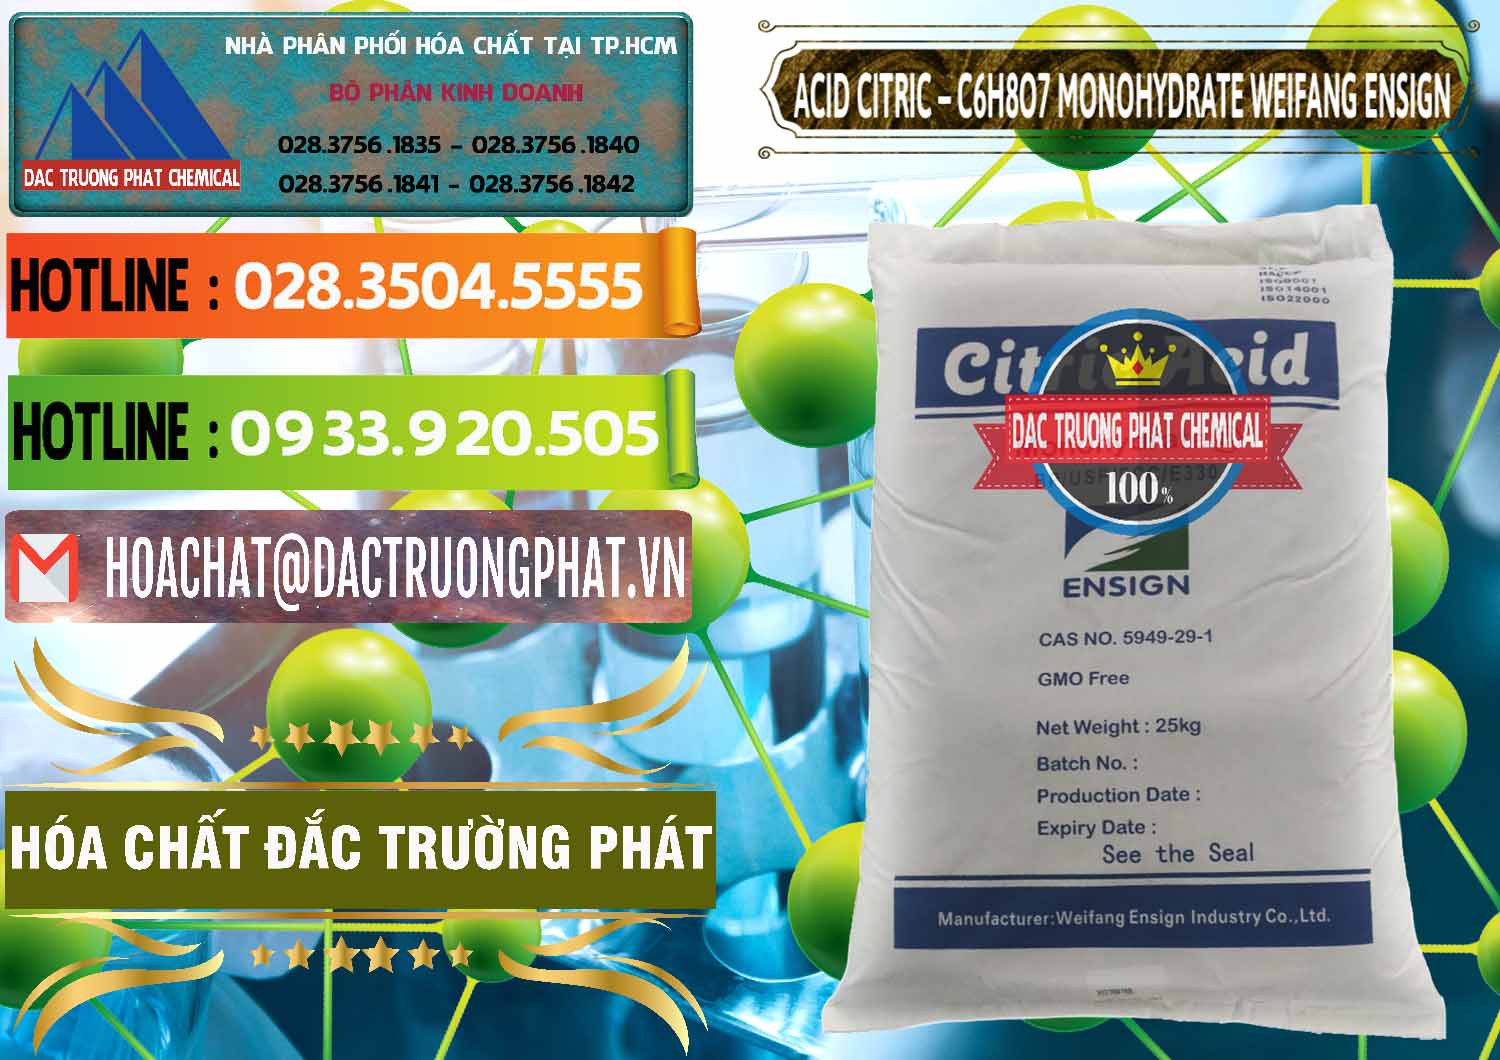 Bán _ cung cấp Acid Citric - Axit Citric Monohydrate Weifang Trung Quốc China - 0009 - Cty chuyên kinh doanh - phân phối hóa chất tại TP.HCM - cungcaphoachat.com.vn